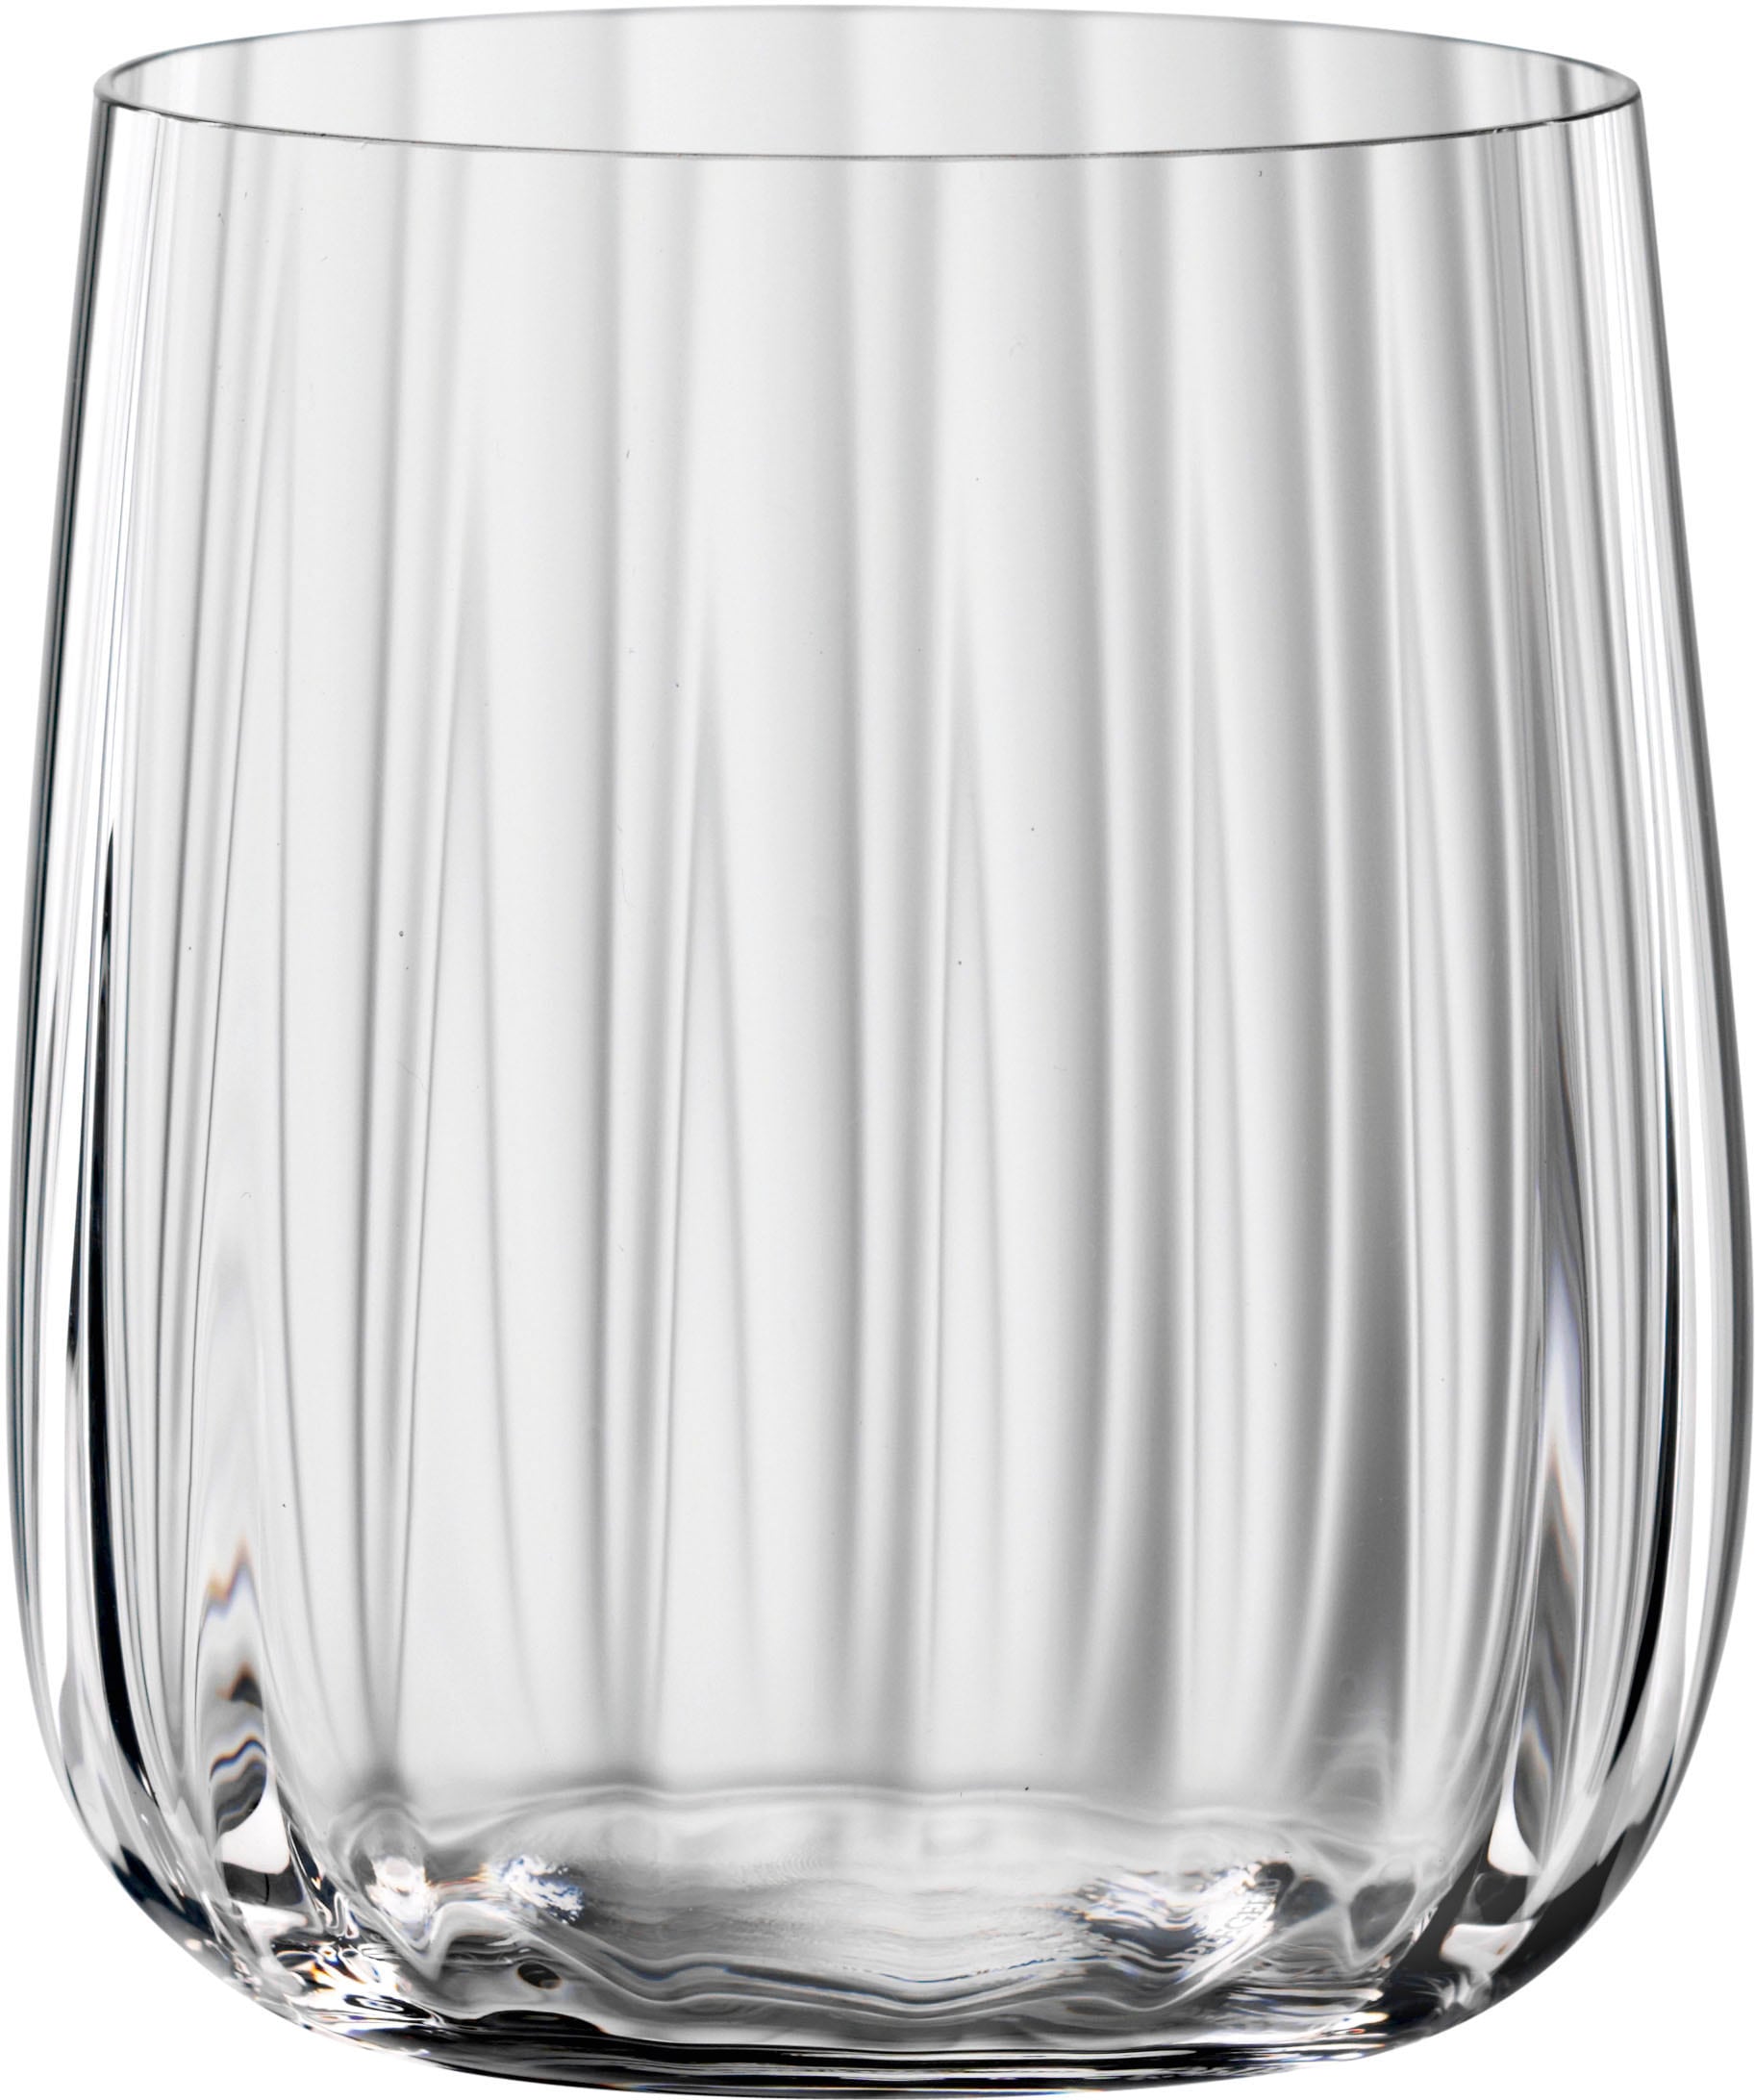 SPIEGELAU Becher »LifeStyle«, (Set, 4 tlg., Set bestehend aus 4 Gläsern), 340 ml, 4-teilig